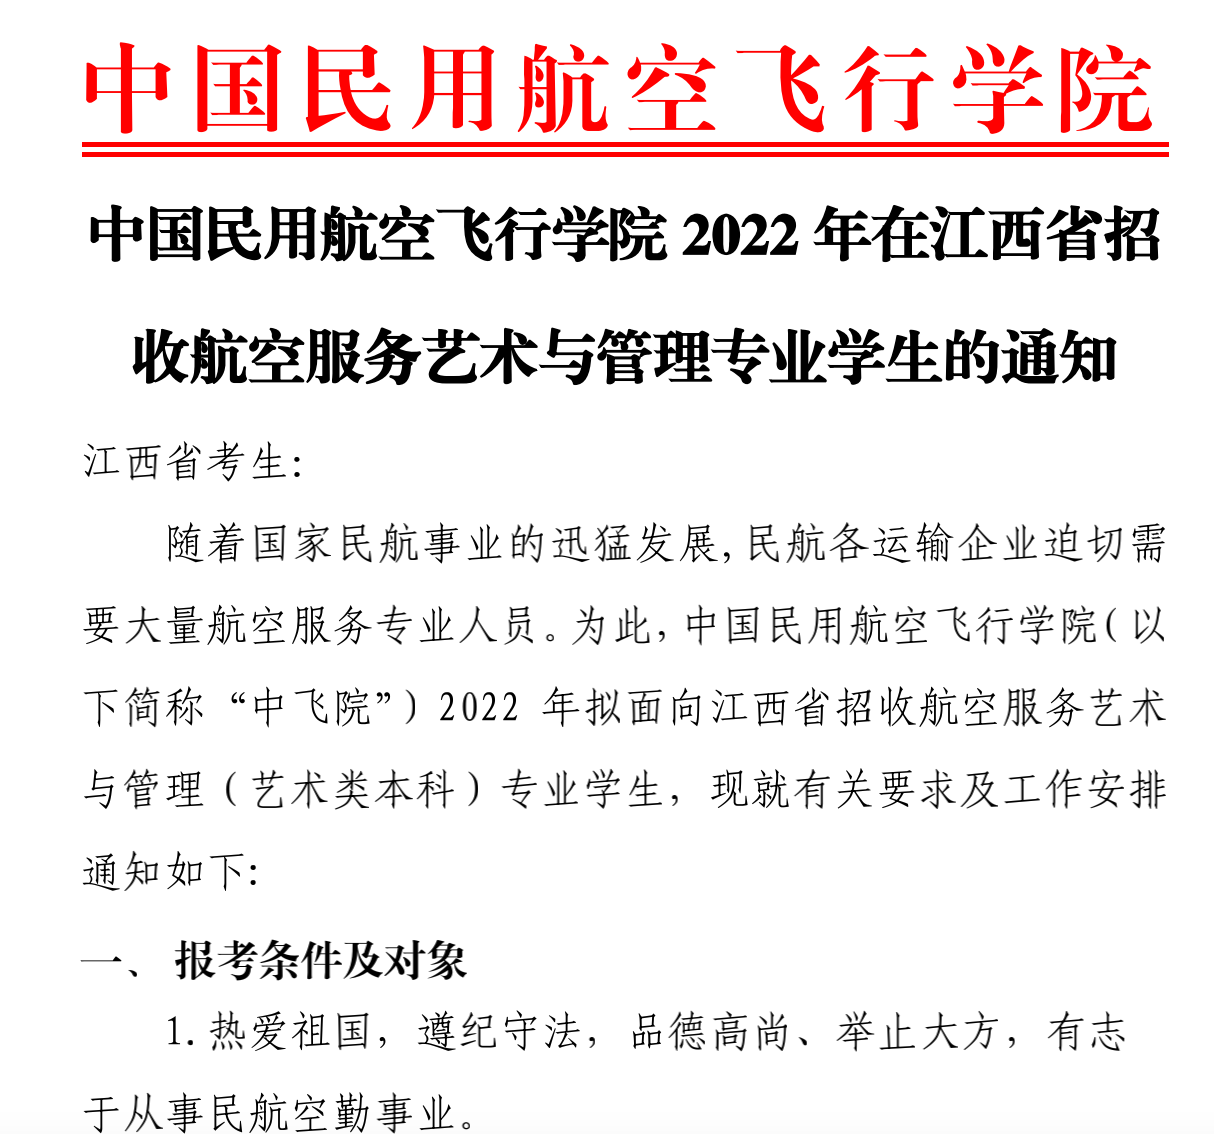 江西：中国民用航空飞行学院2022年招收航空服务艺术与管理专业学生